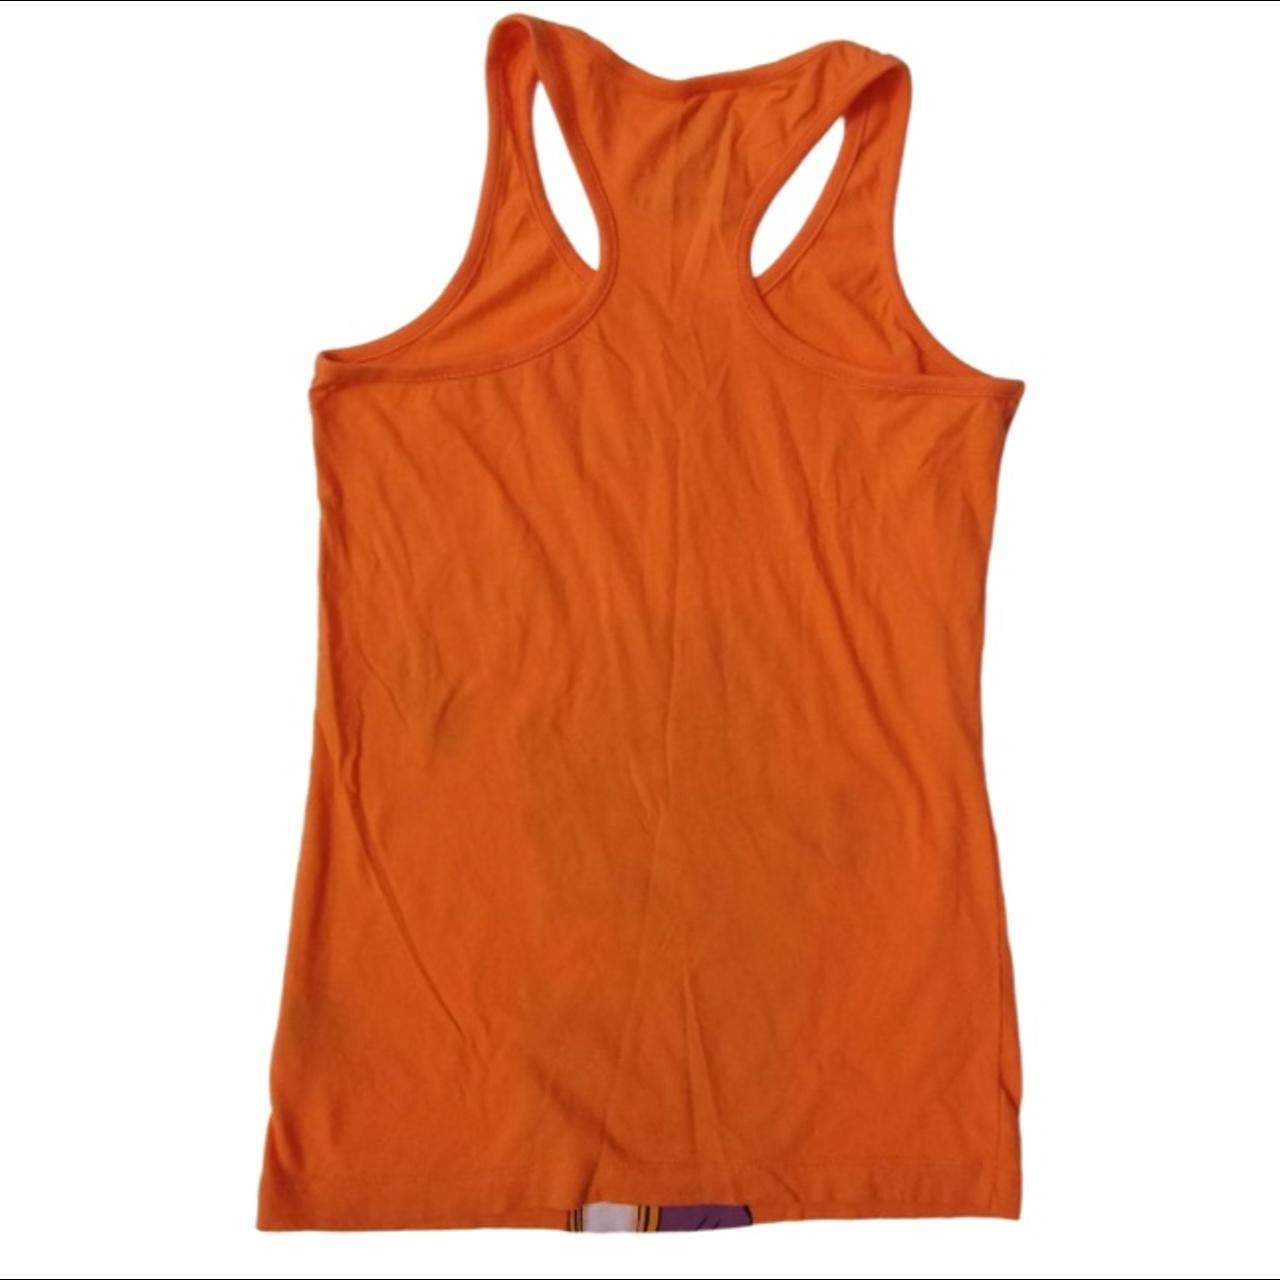 Nike Women's Orange Vests-tanks-camis (3)